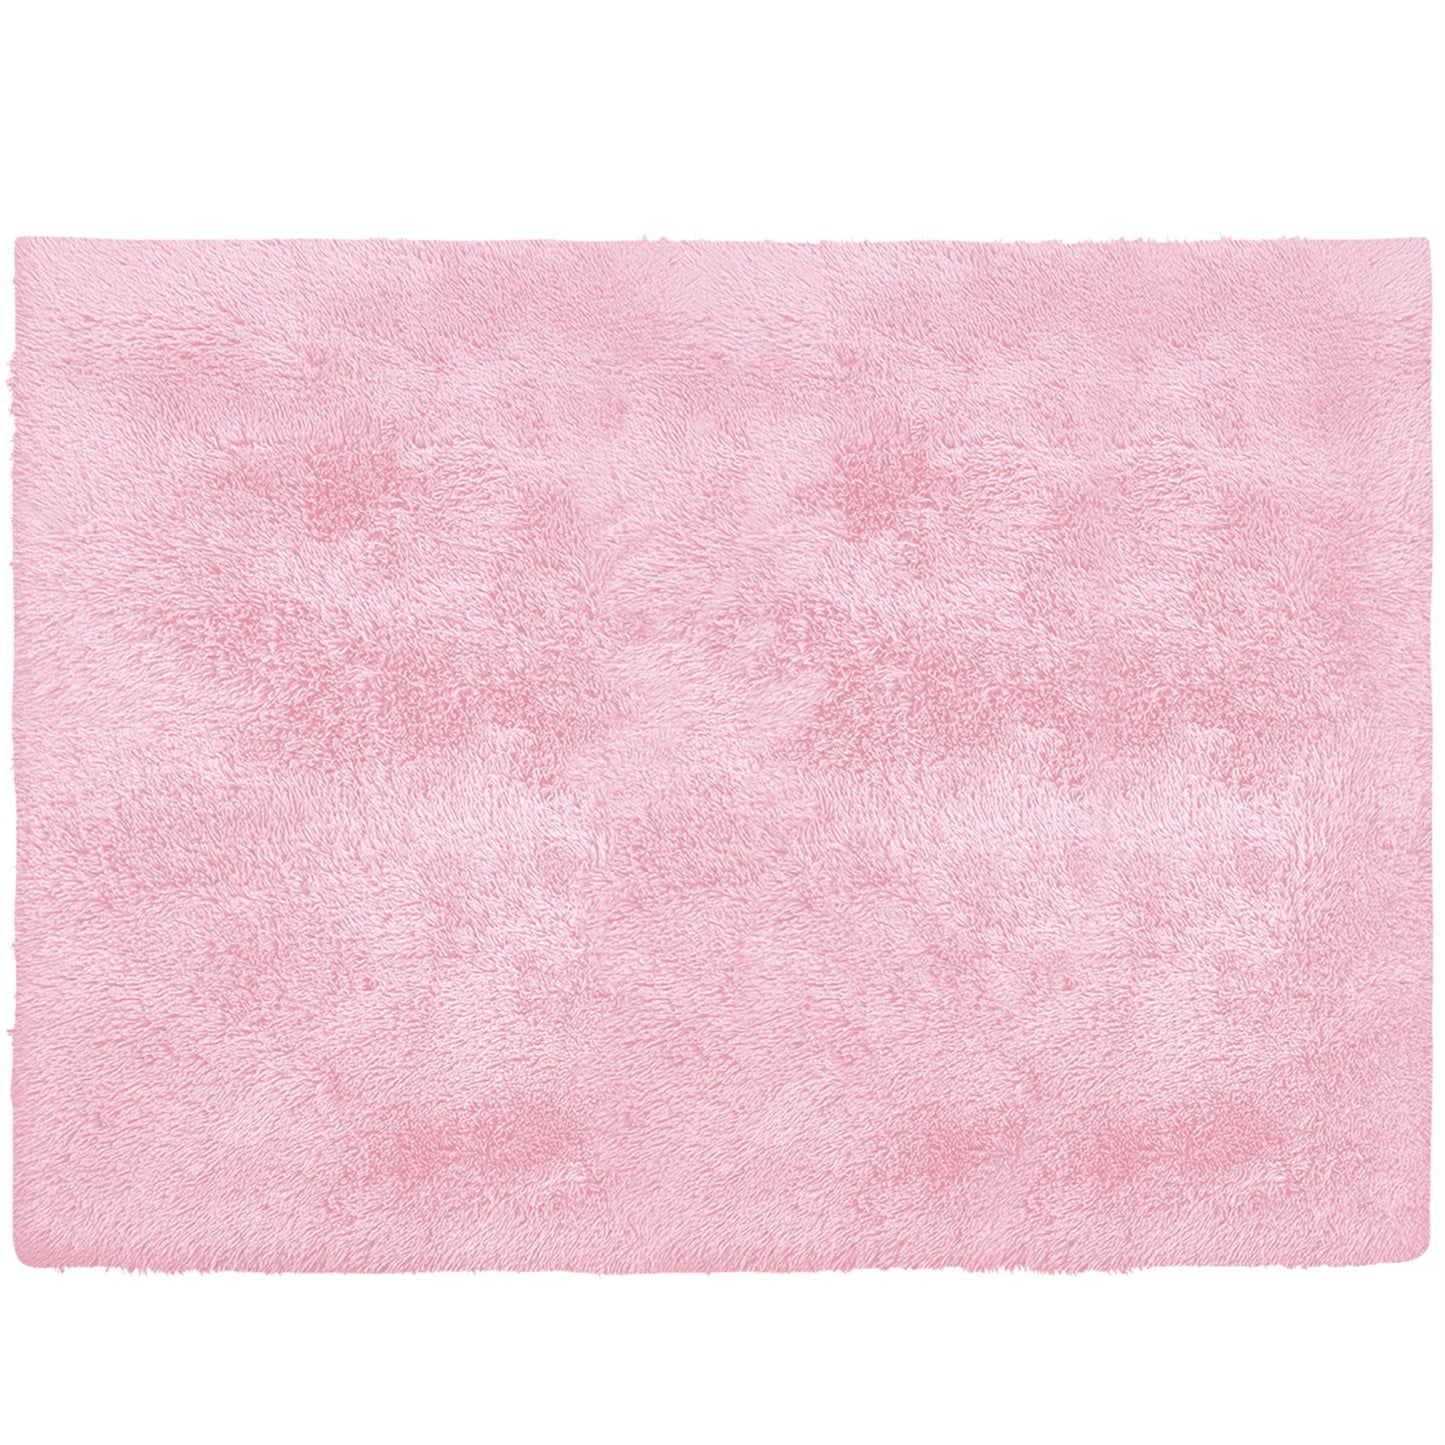 5' X 7' Pink Shag Area Rug